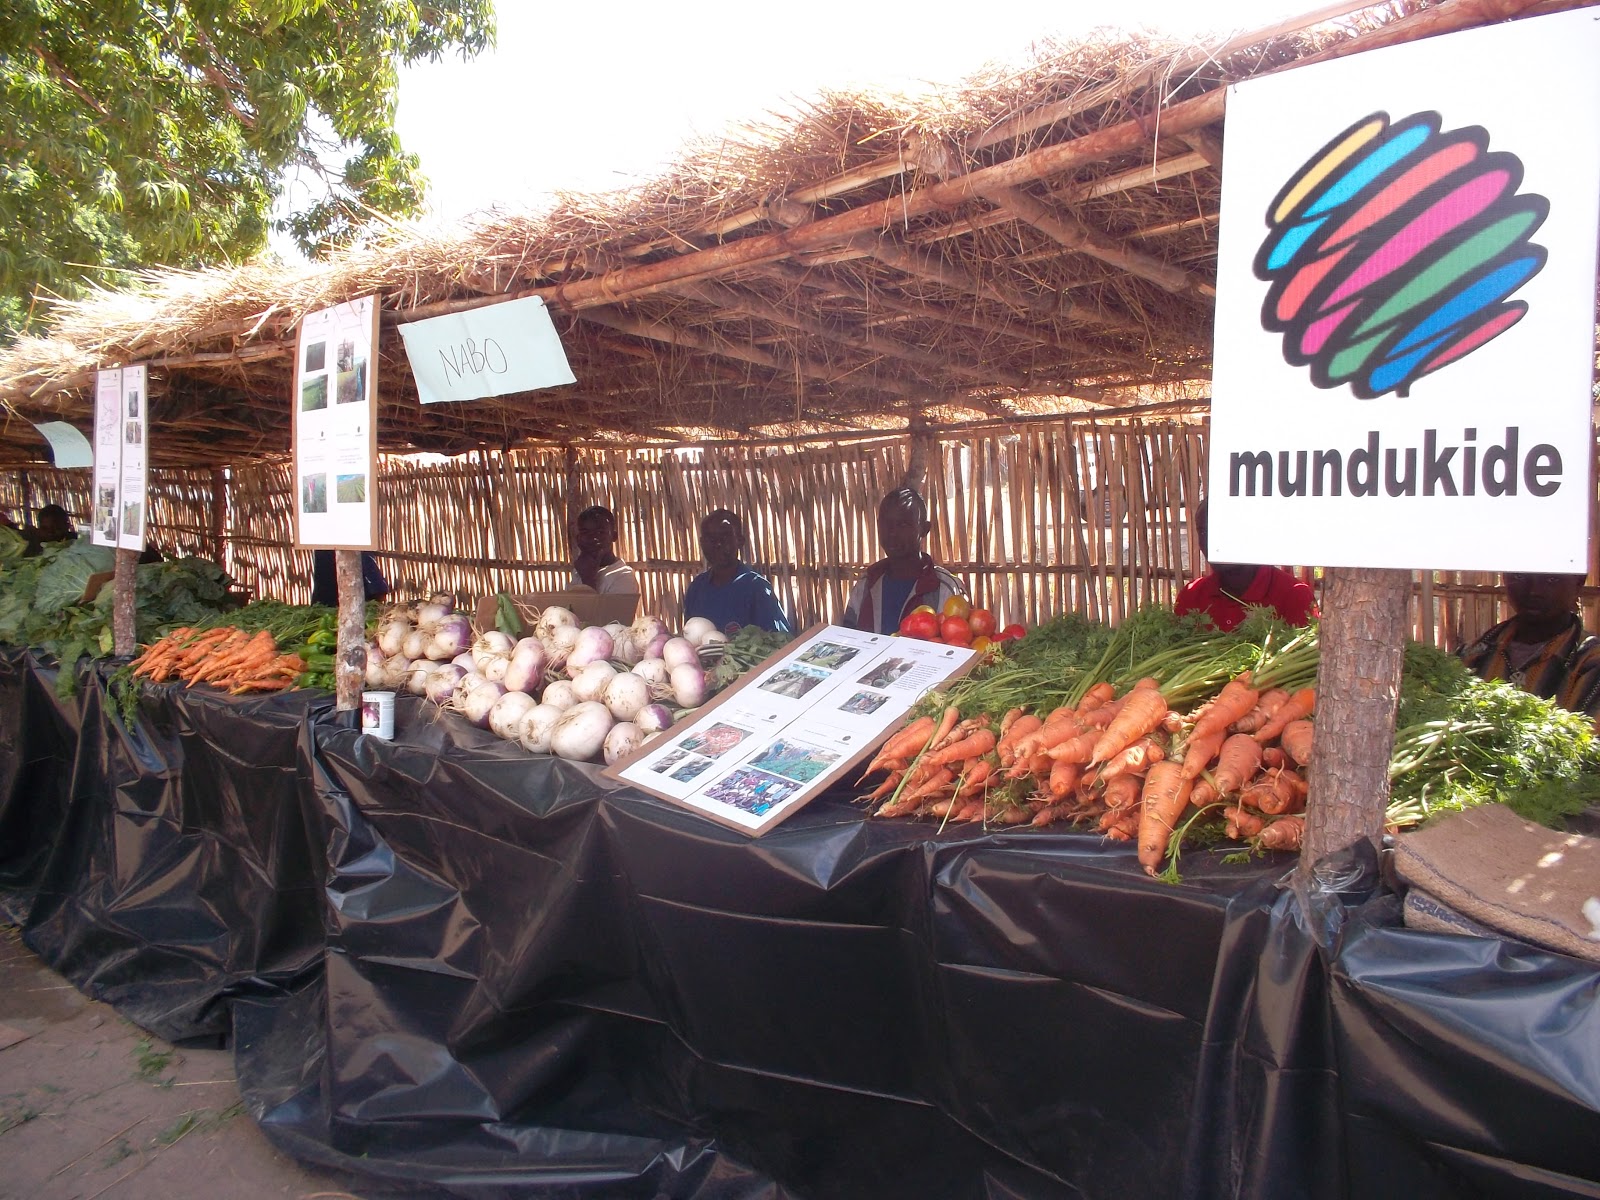 ¿Quieres colaborar con Mundukide para que Mozambique aumente su nivel de vida?